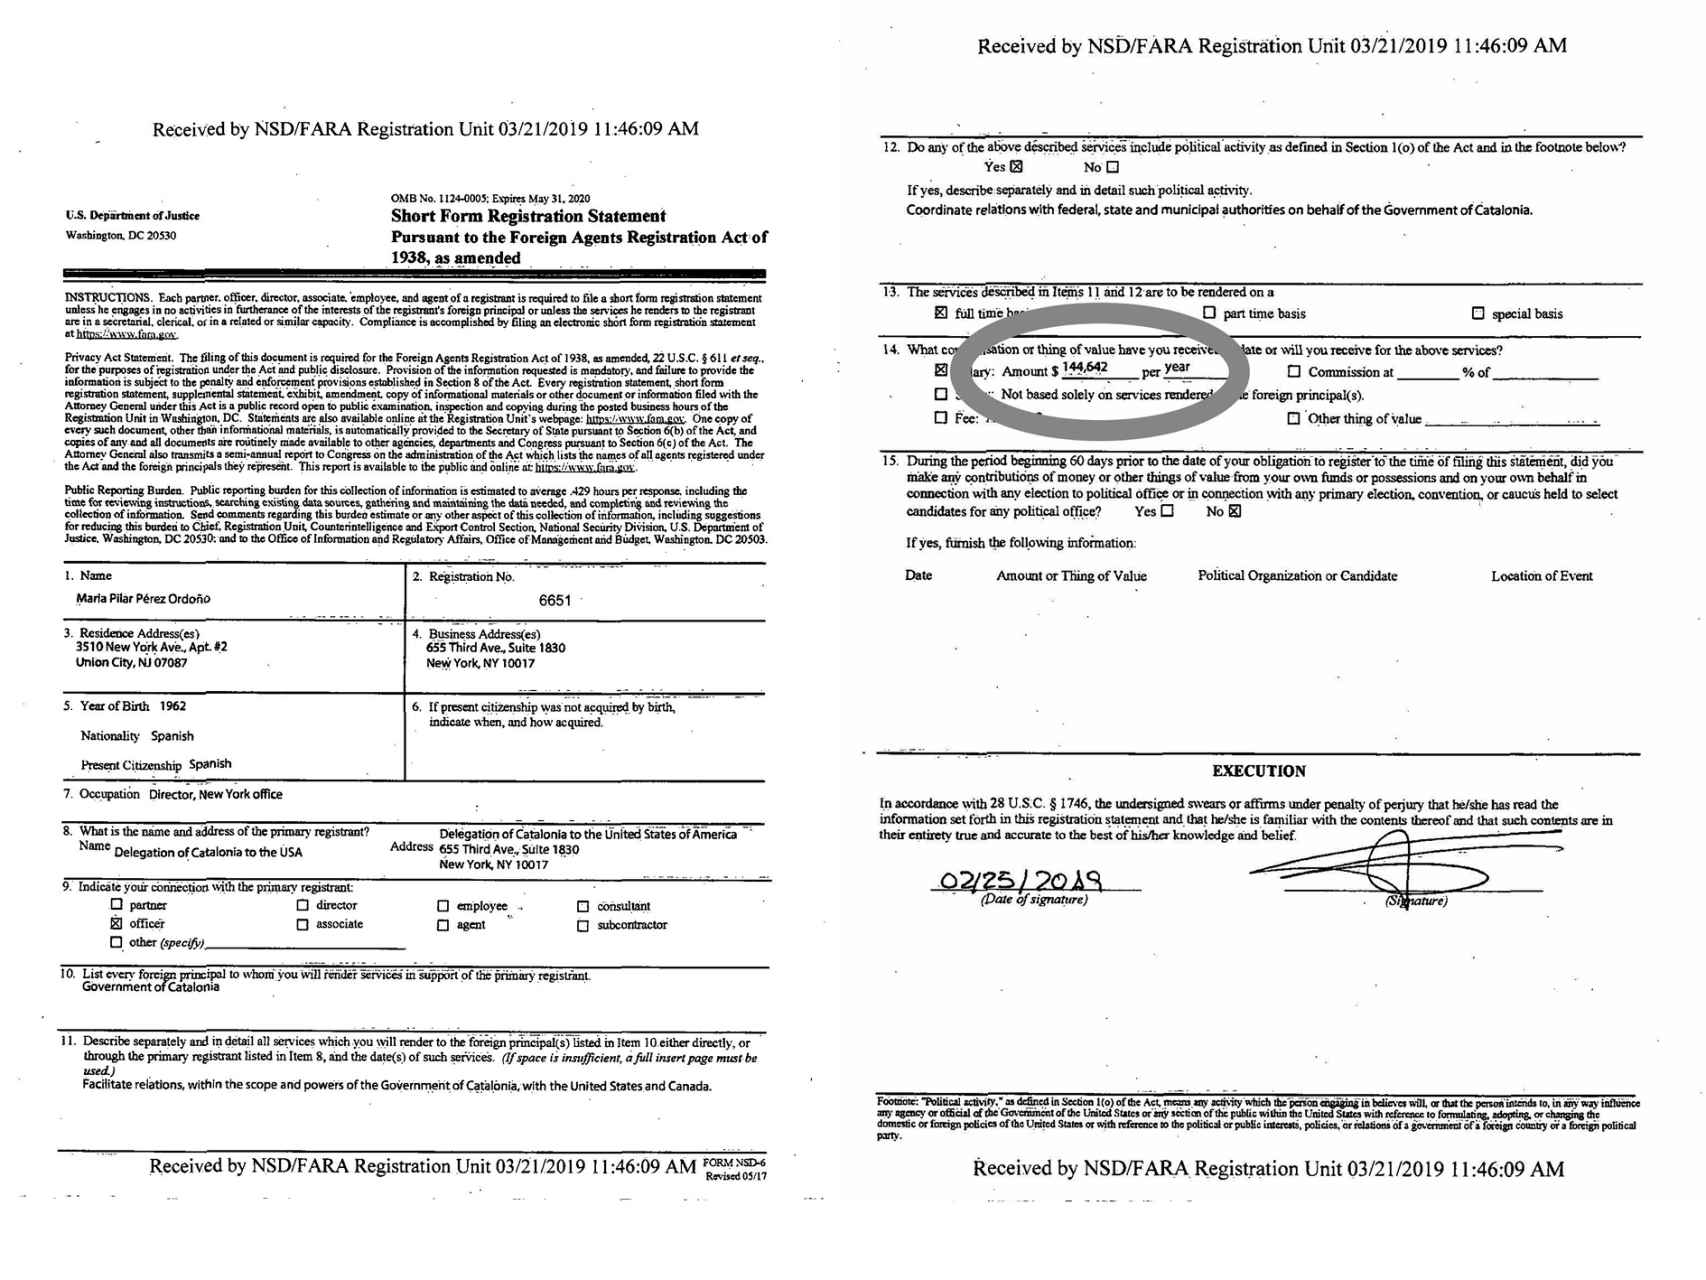 Documento del Departamento de Justicia de los EE. UU. en el que aparece el sueldo de Maria Pilar Pérez Ordoño.